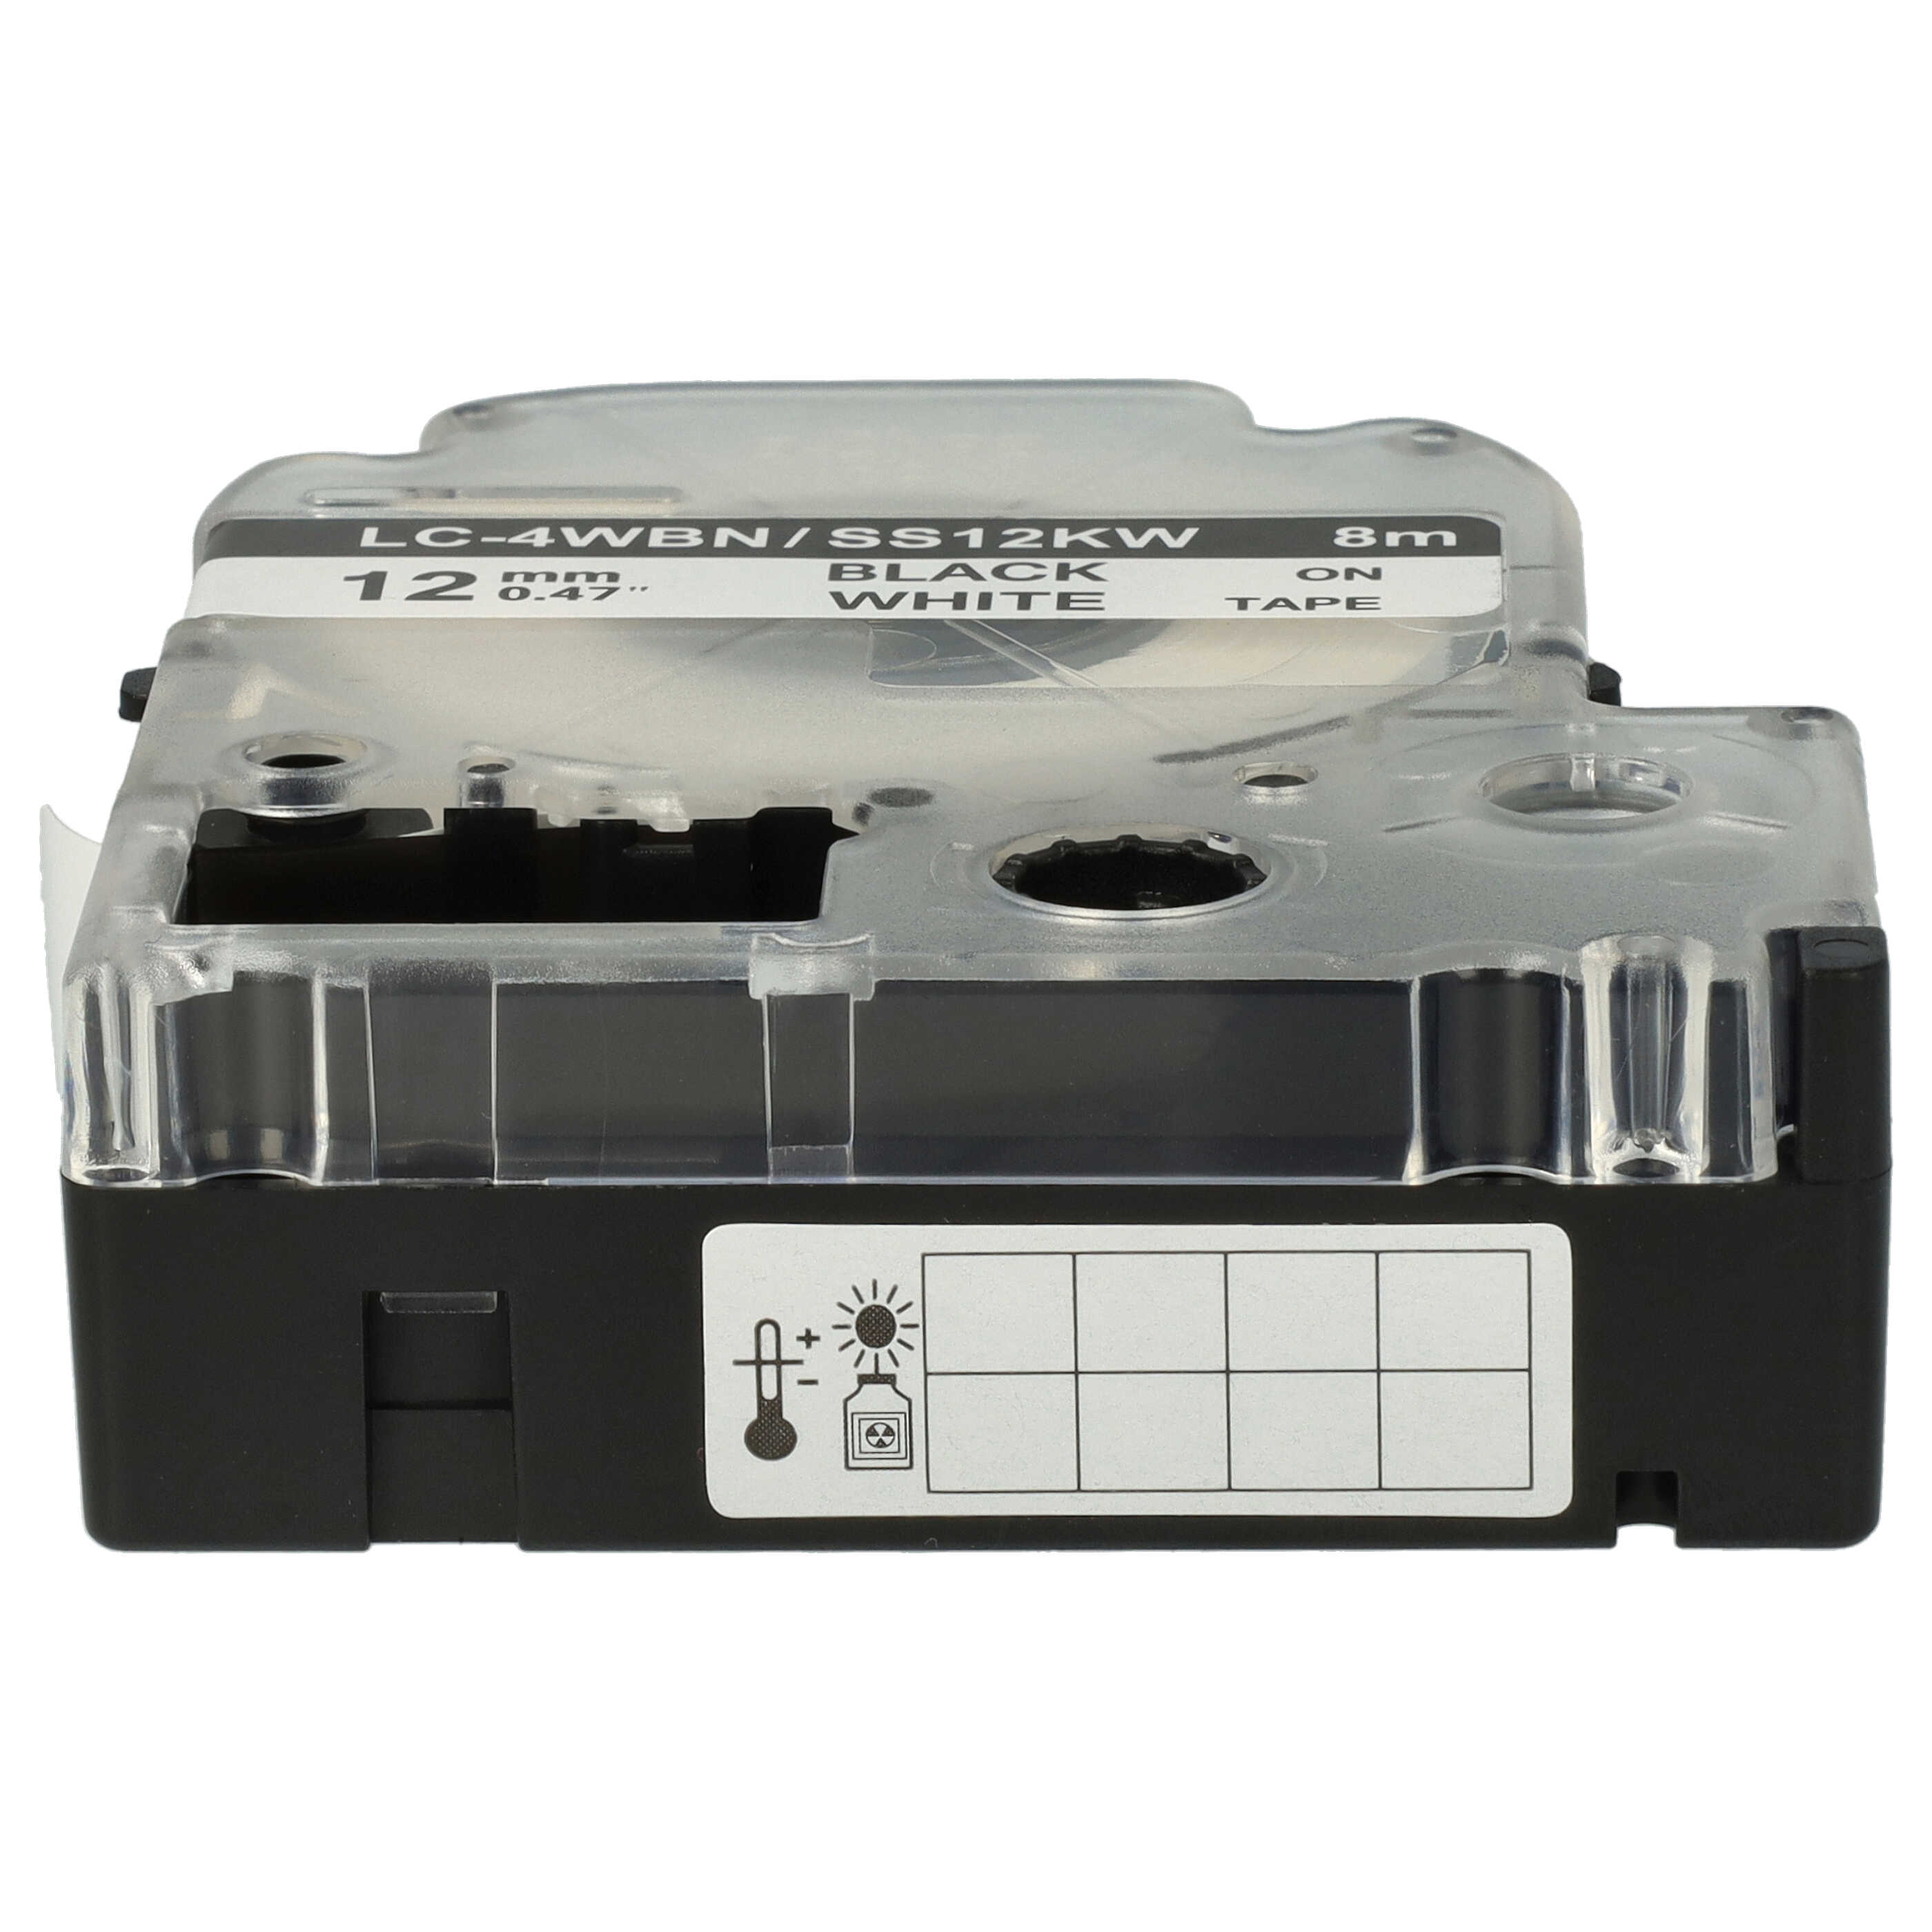 2x Cassetta nastro sostituisce Epson SS12KW, LC-4WBN per etichettatrice Epson 12mm nero su bianco